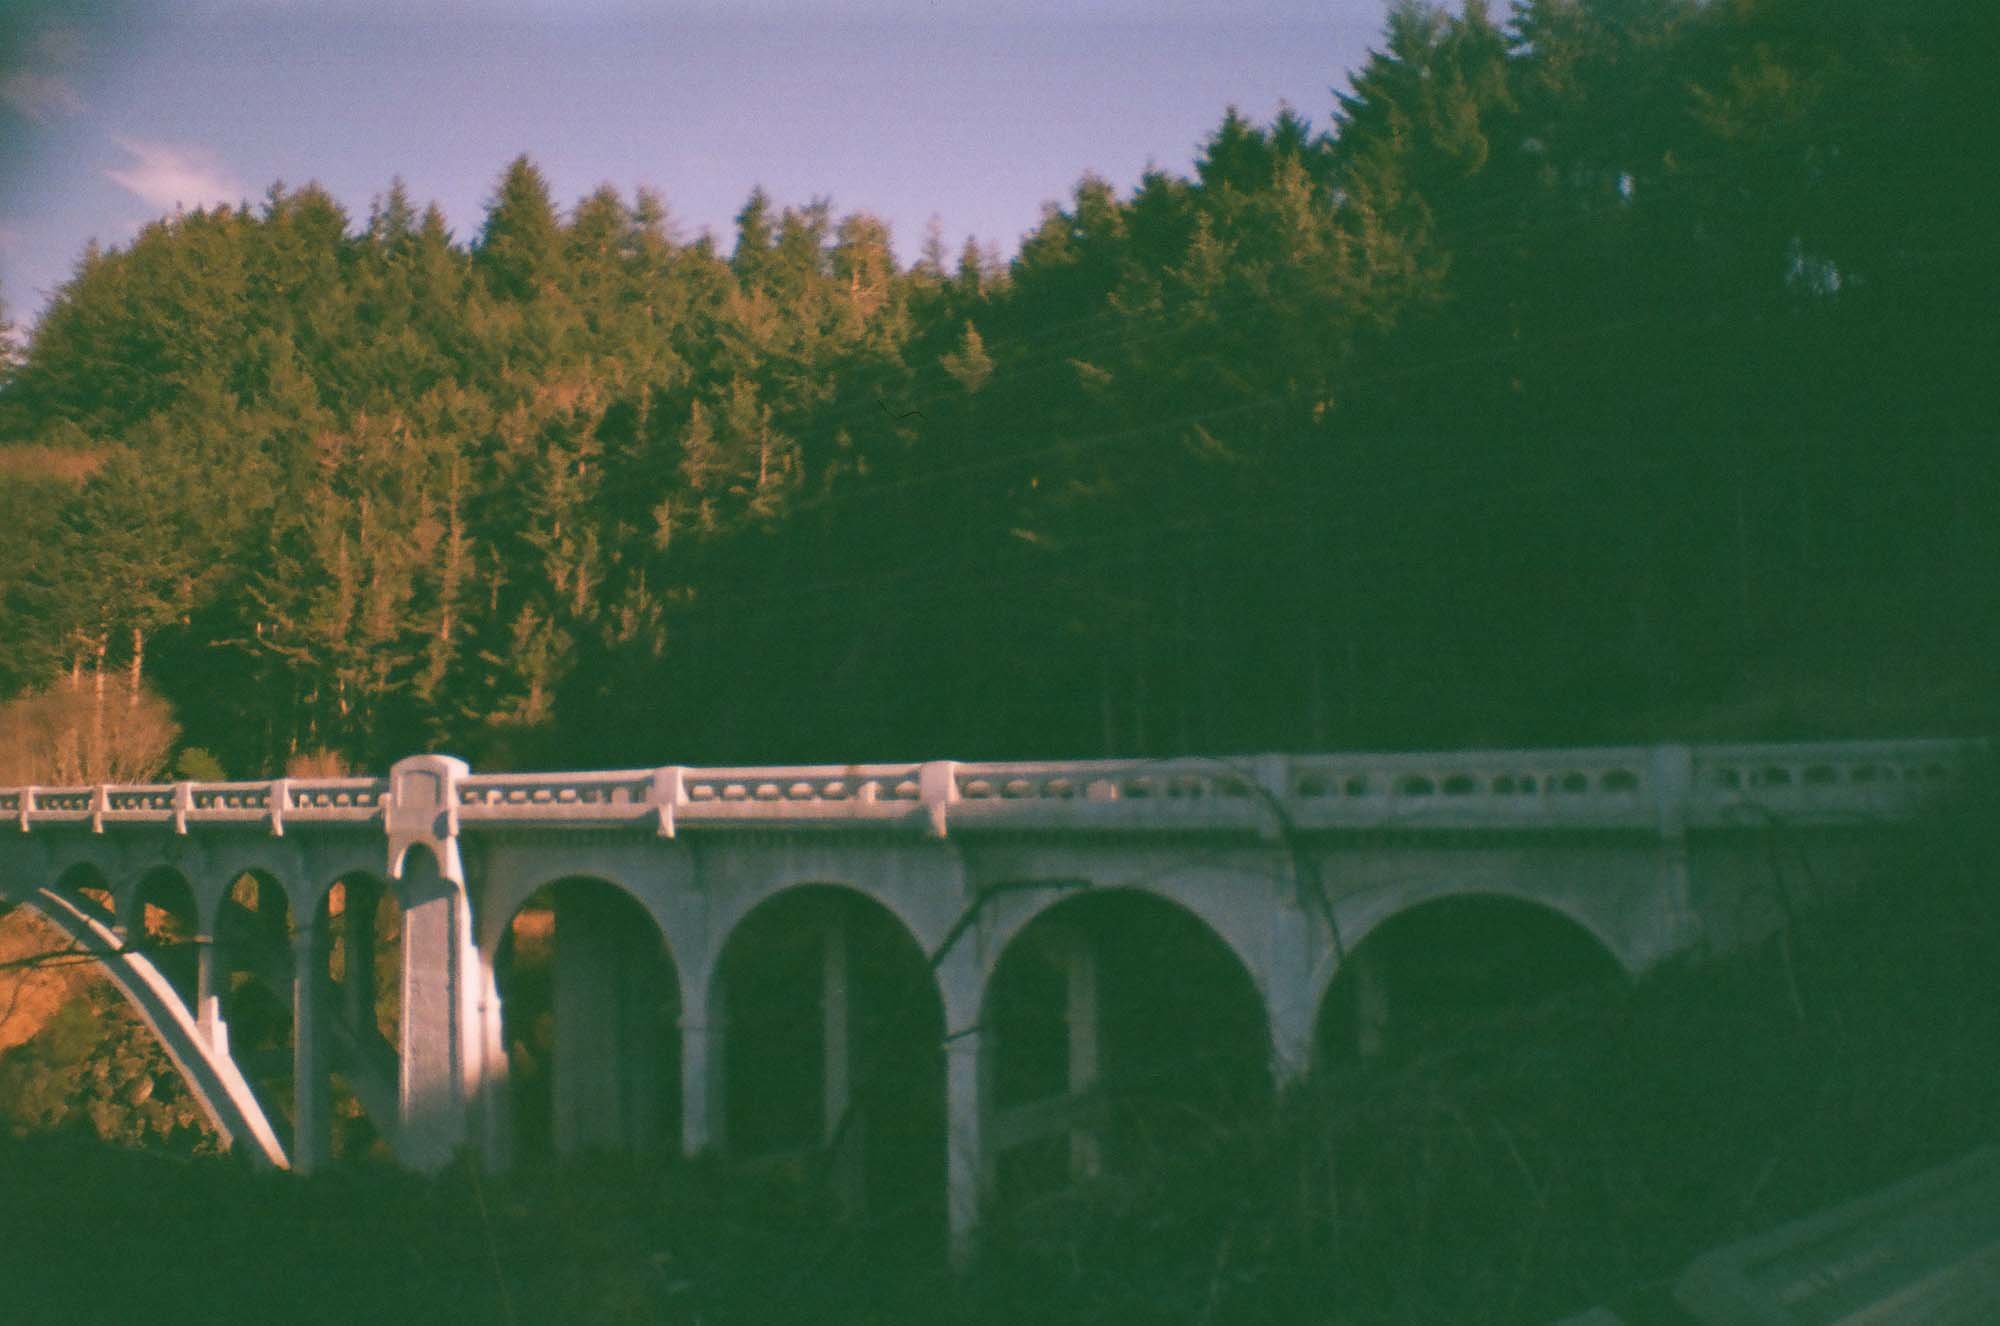 Ben Jones Bridge, Depoe Bay, OR